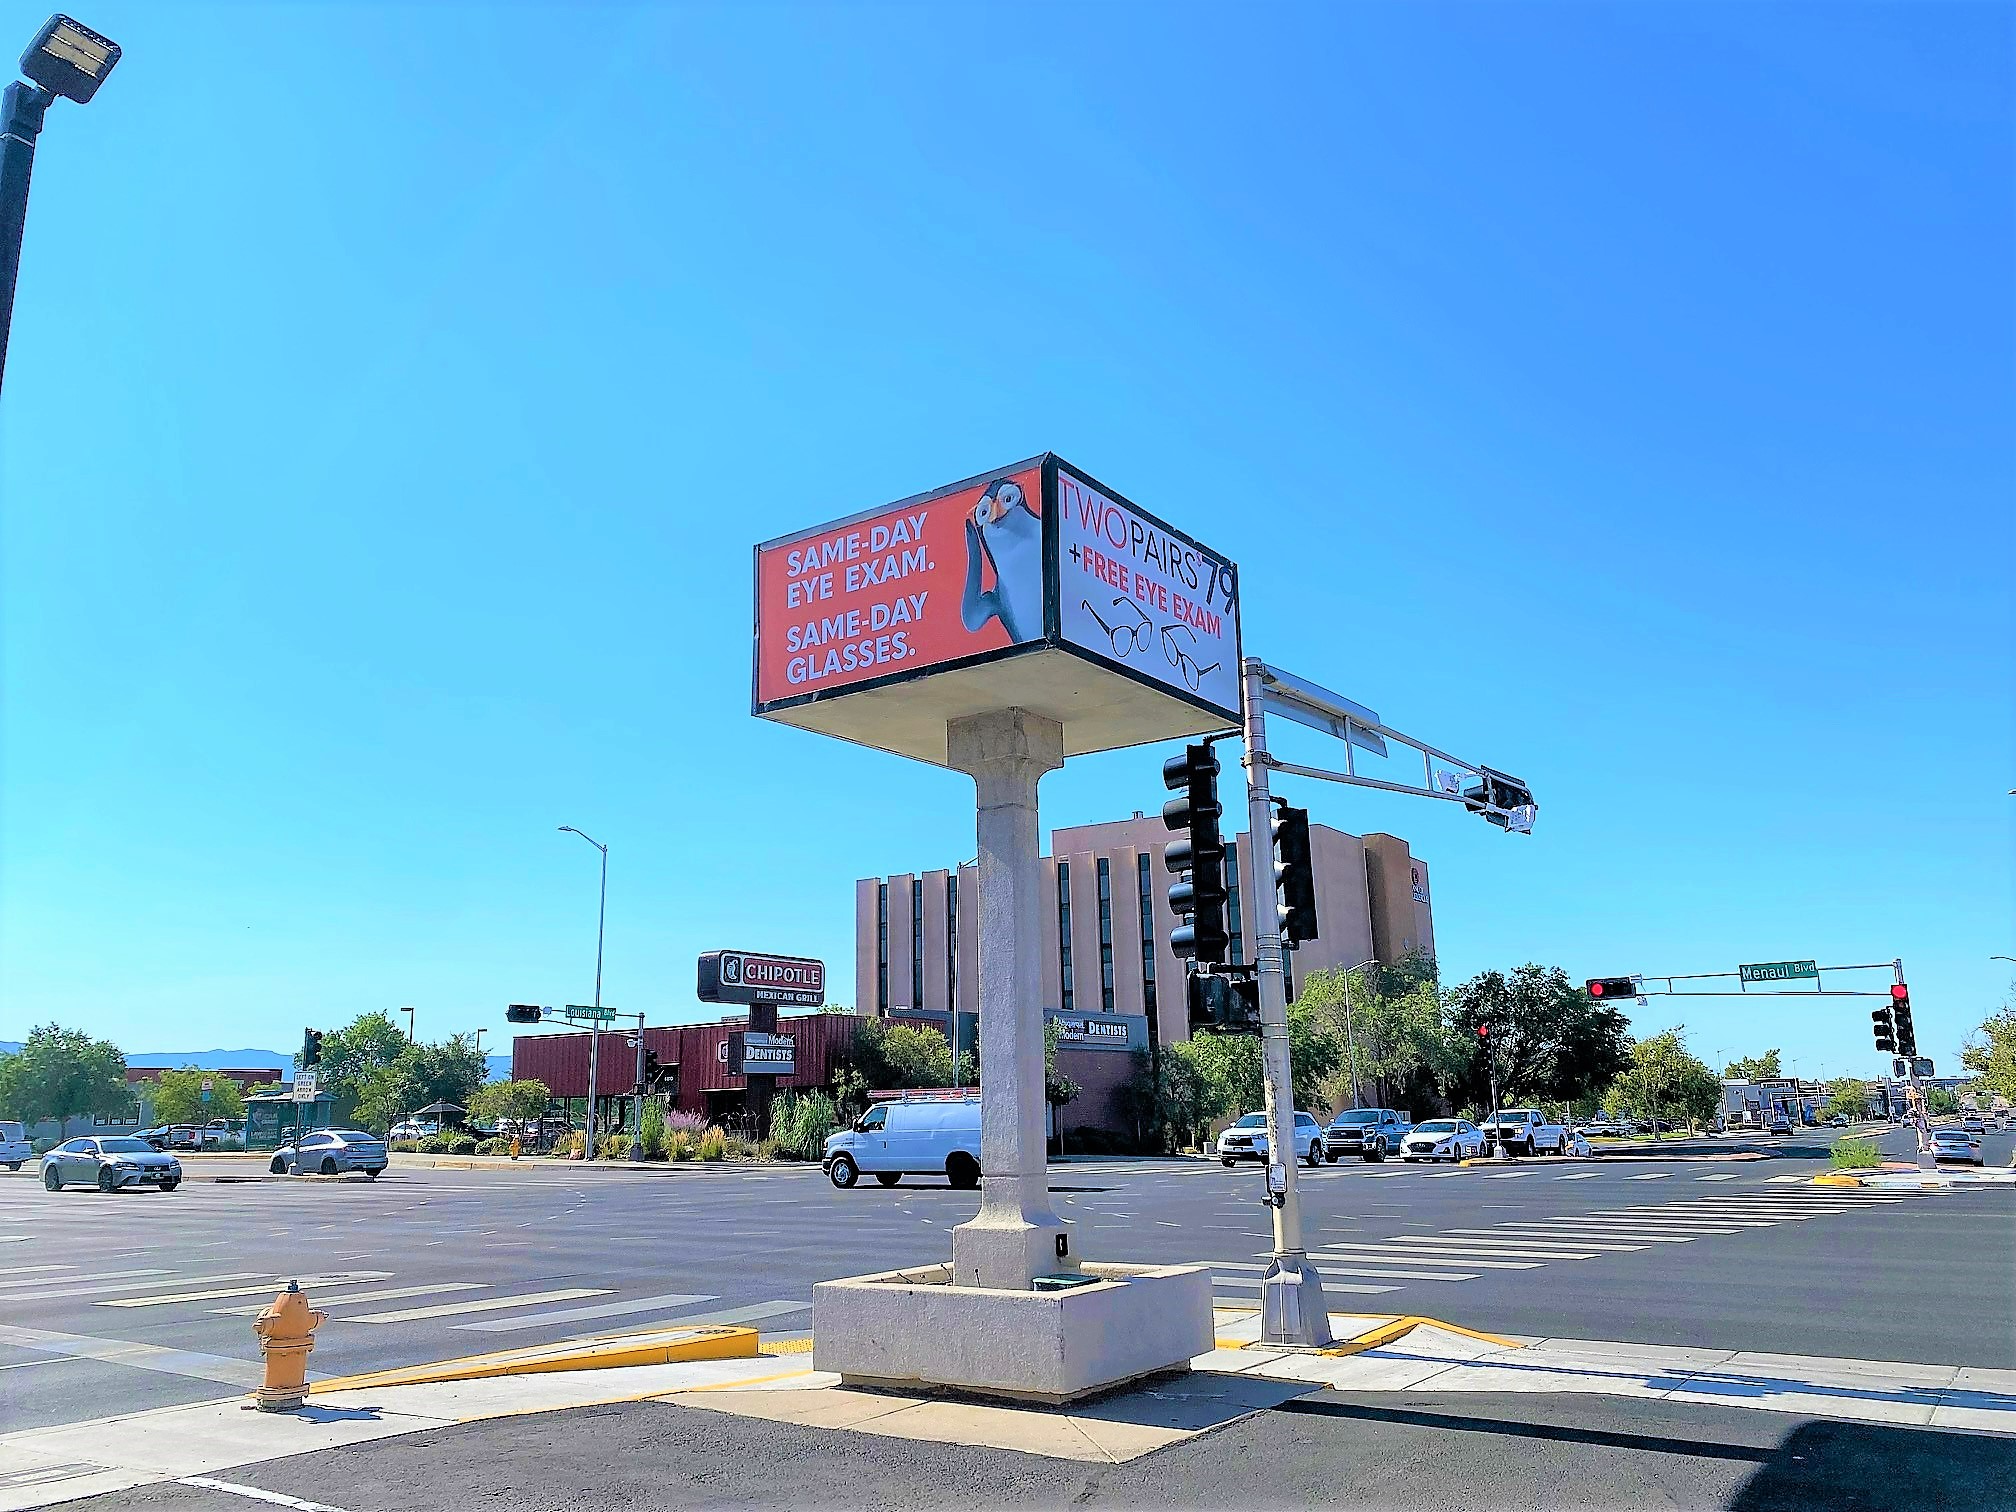 Corner View at Stanton Optical store in Albuquerque, NM 87110